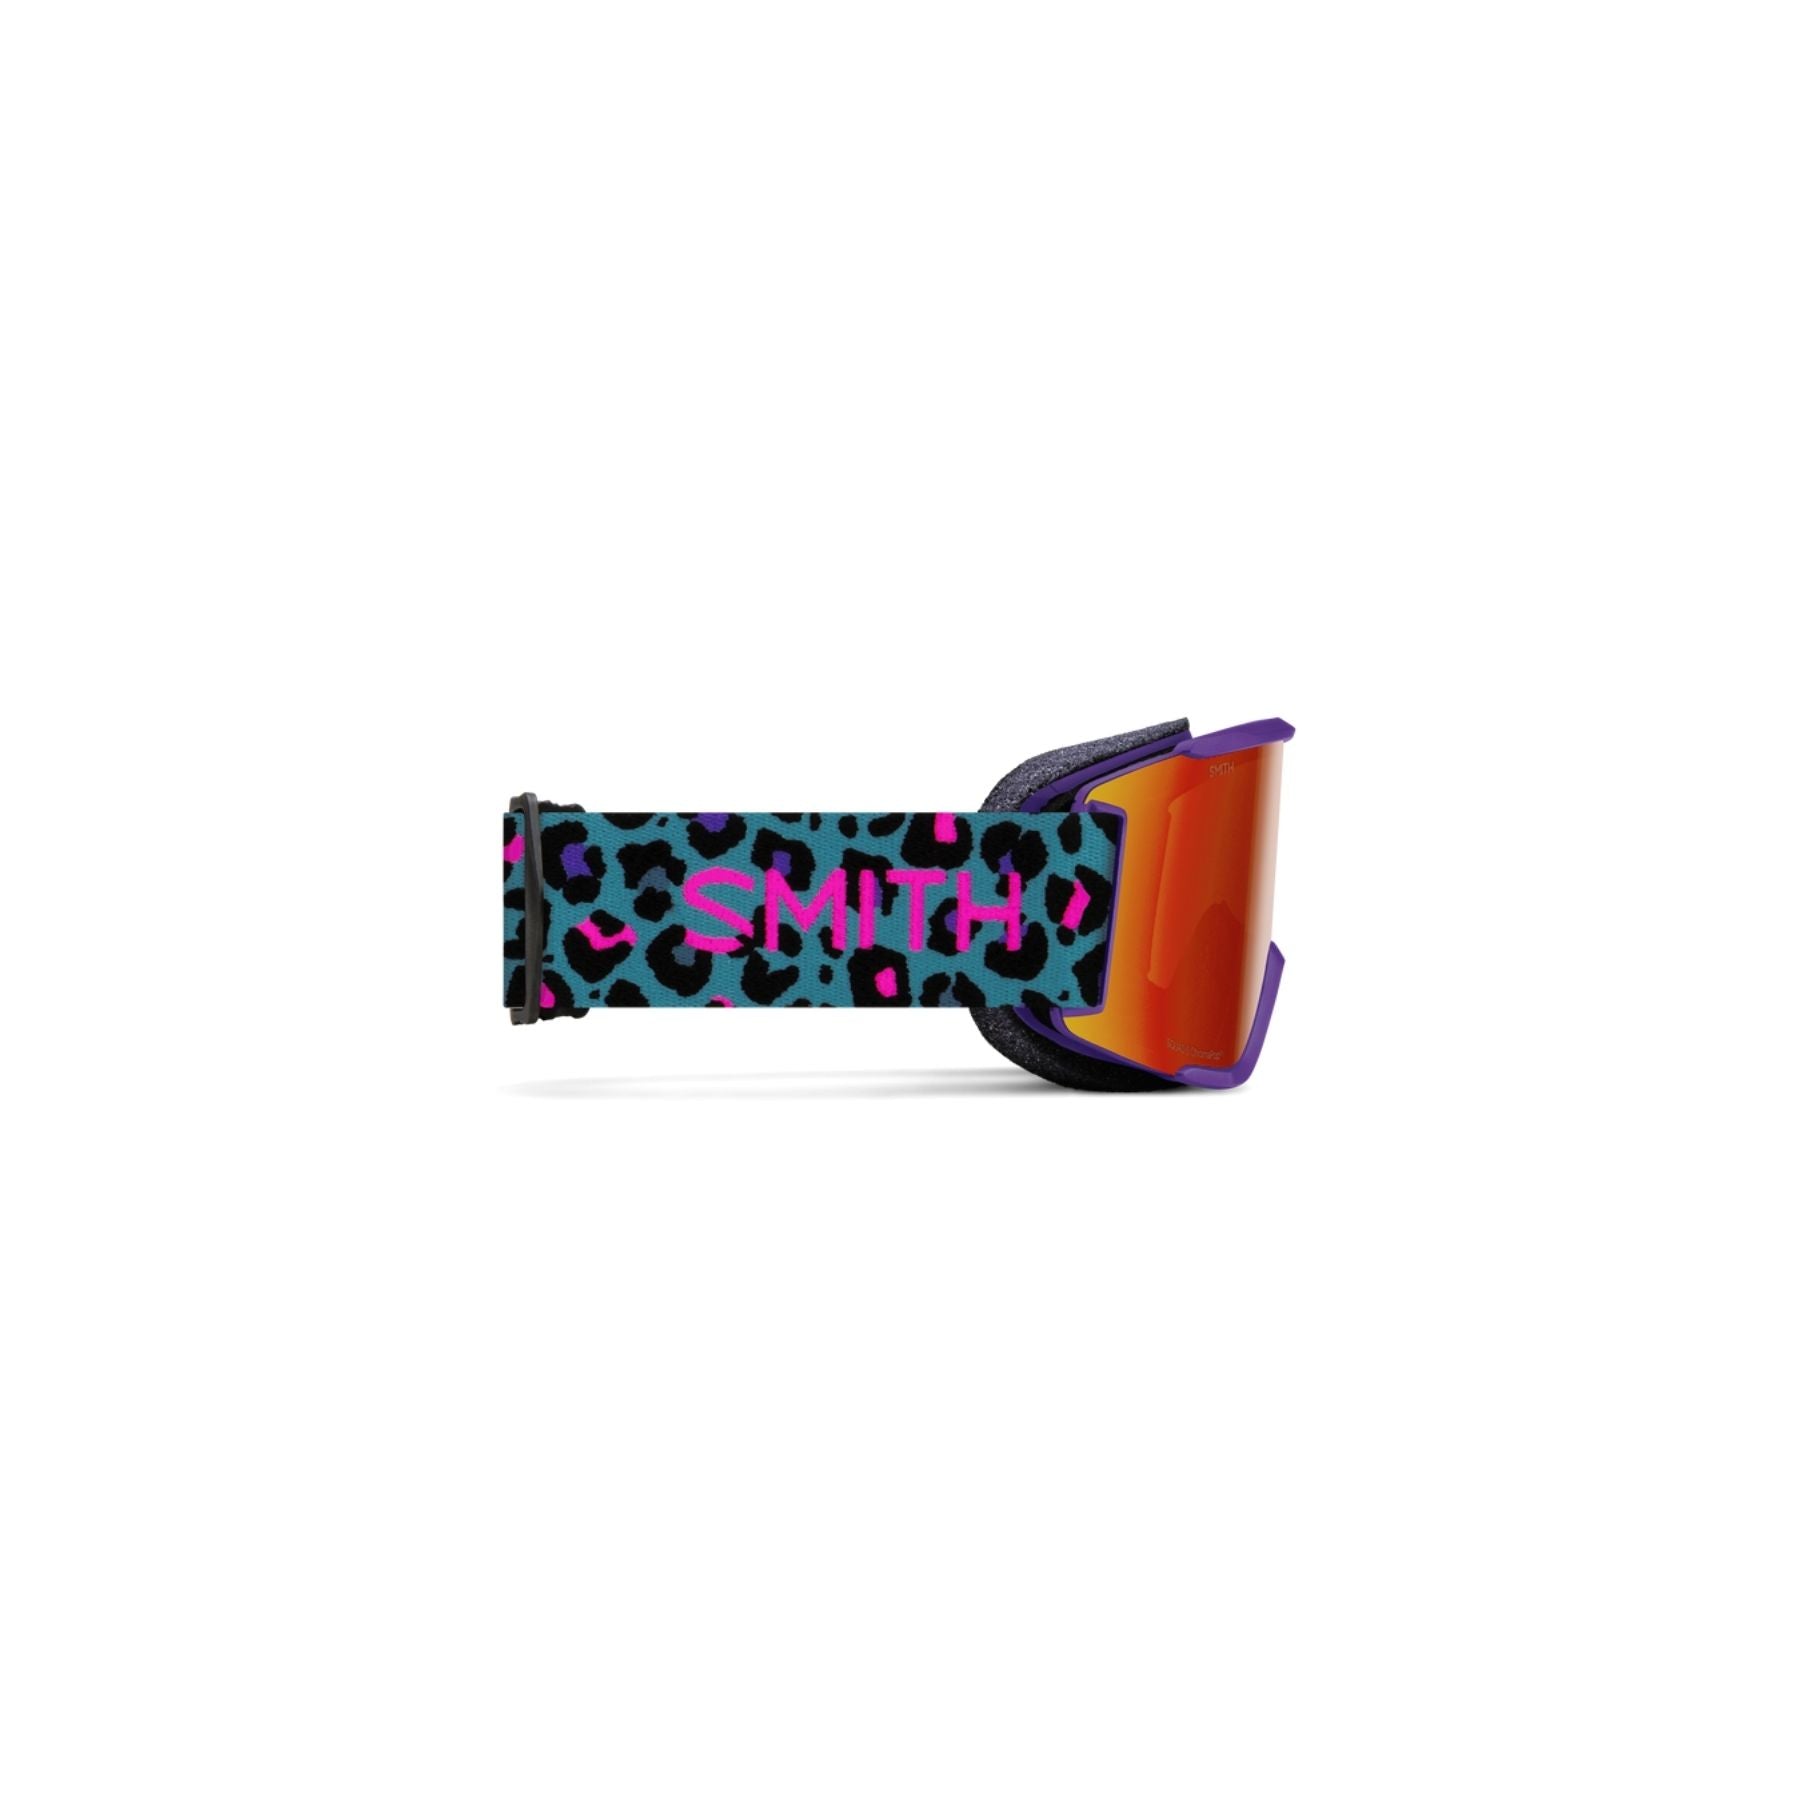 Smith Squad S Goggle In Purple Haze Neon Cheetah